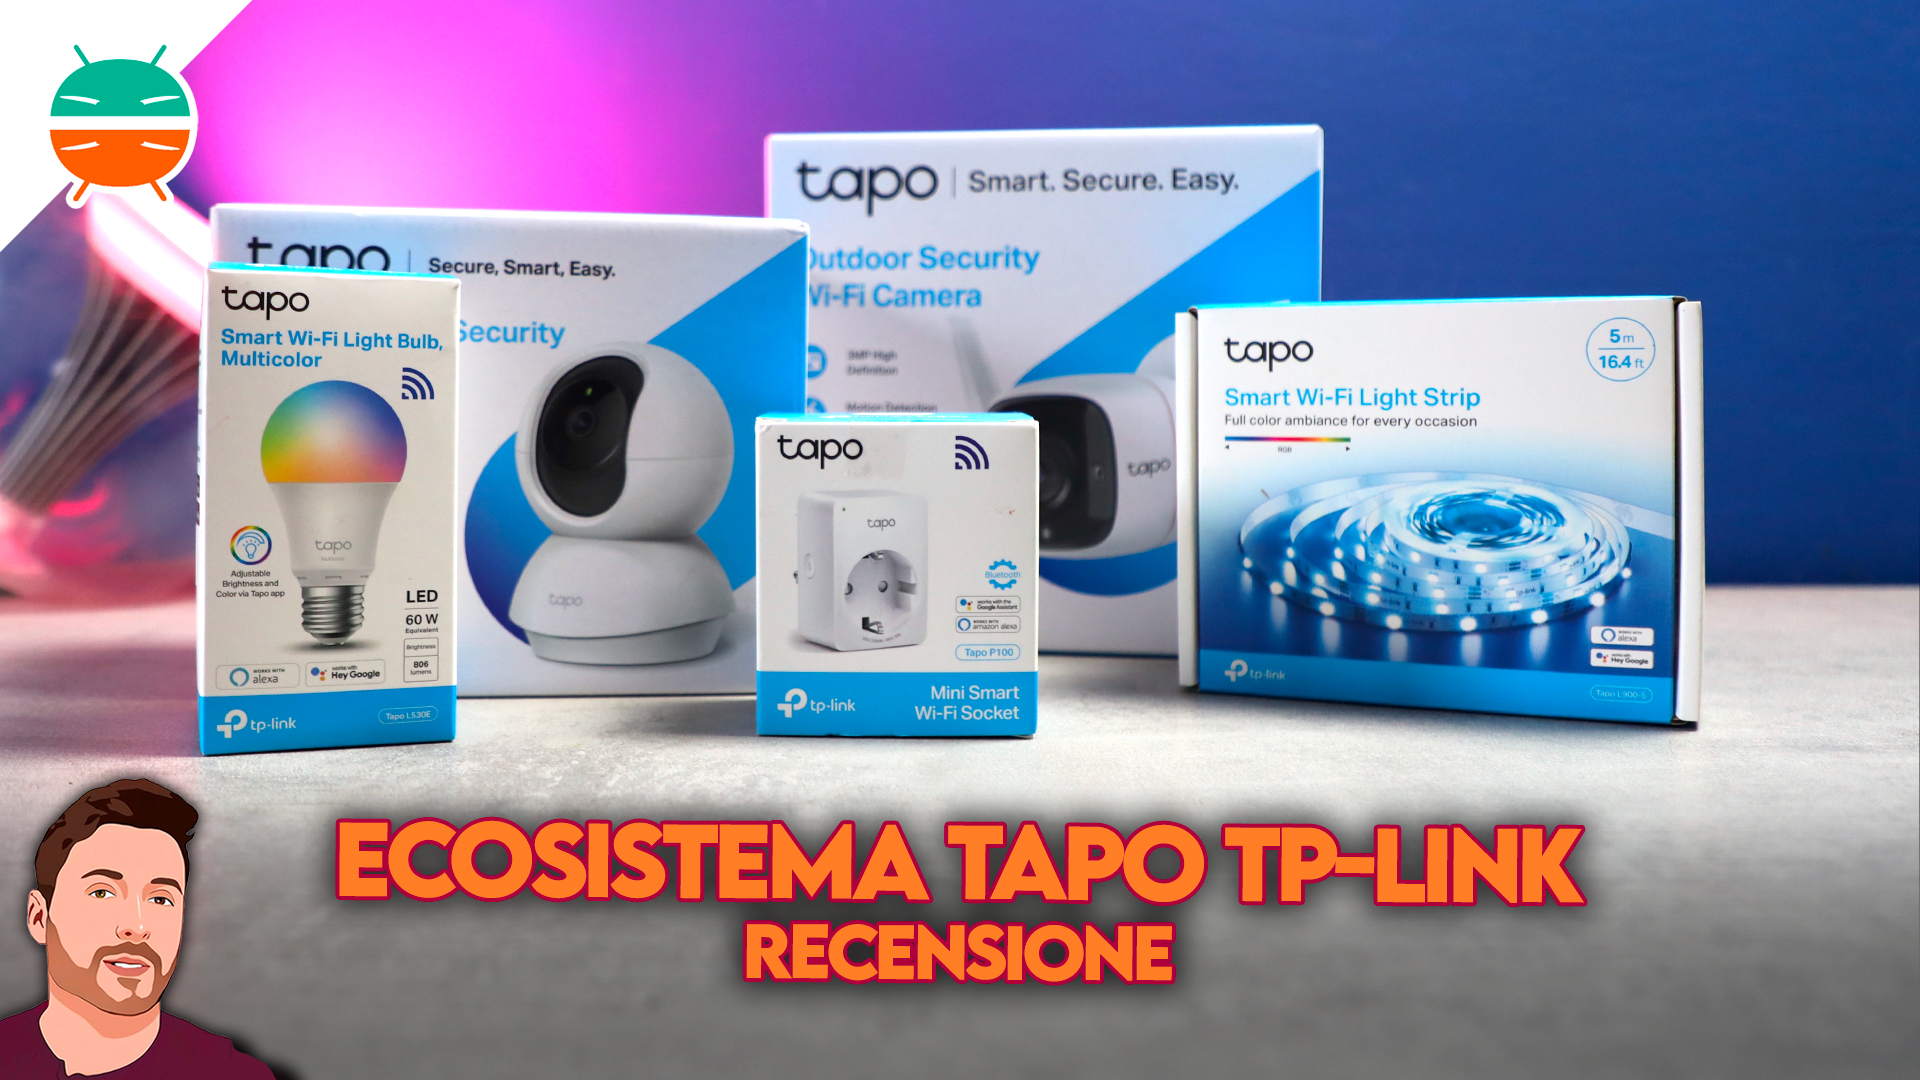 https://gizchina.it/wp-content/uploads/2022/01/Recensione-ecosistema-Tapo-TP-Link-L530E-P100-L900-5-C200-C200-caratteristiche-italia-sconto-coupon-copertina.jpg